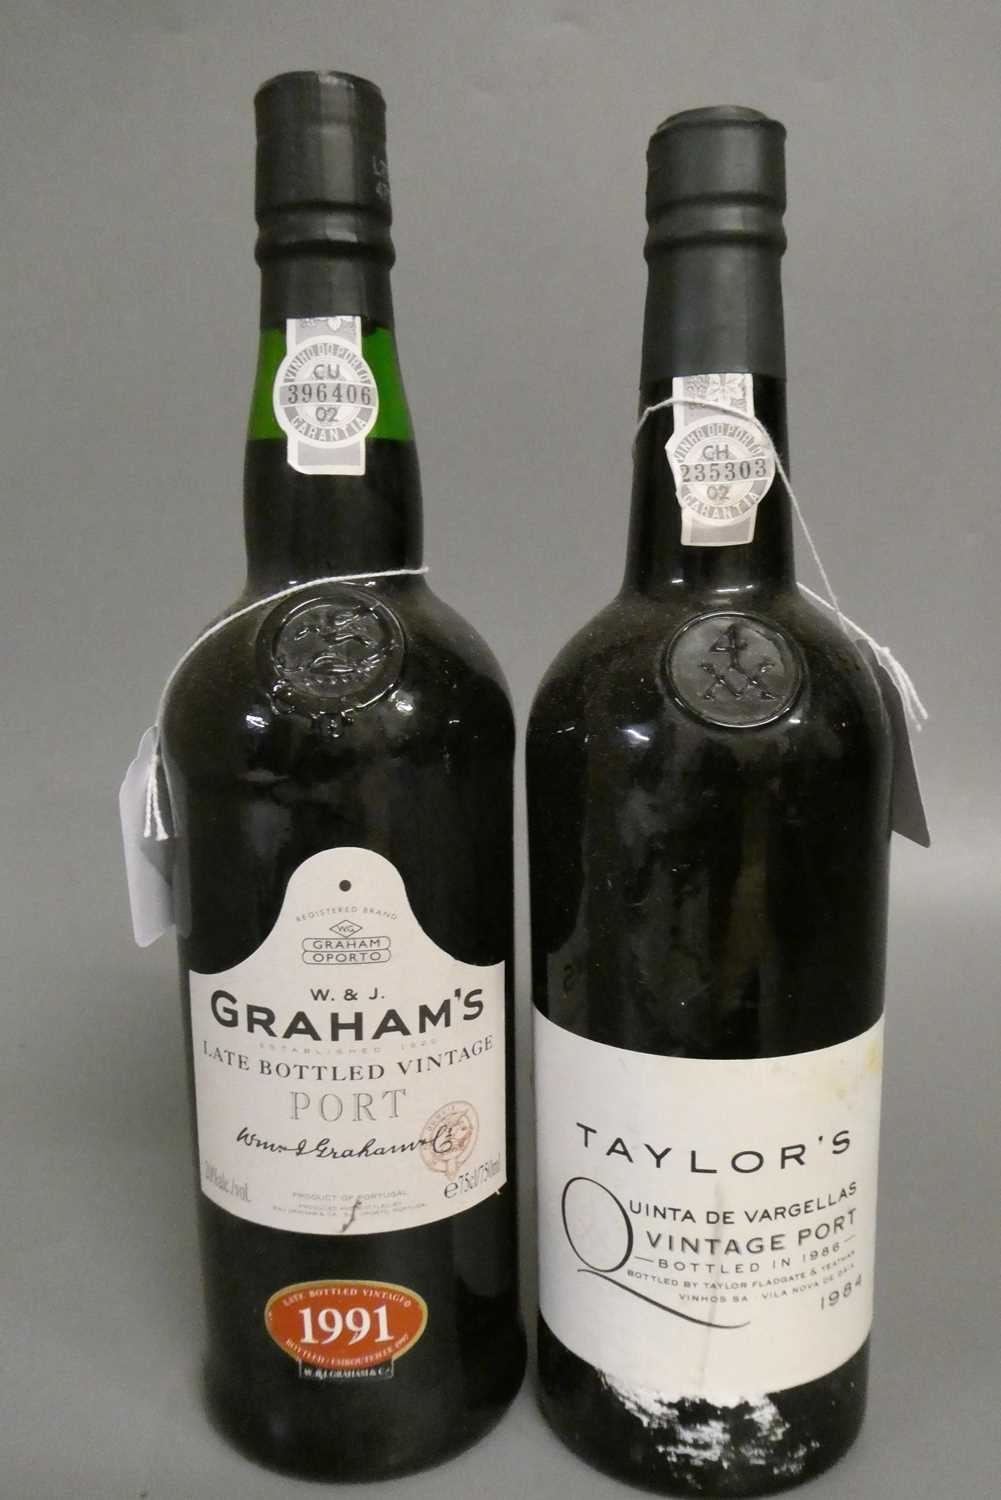 1 bottle Taylor's 1984 vintage port, together with 1 bottle Grahams LBV 1991 port (2) (Est. plus 24%